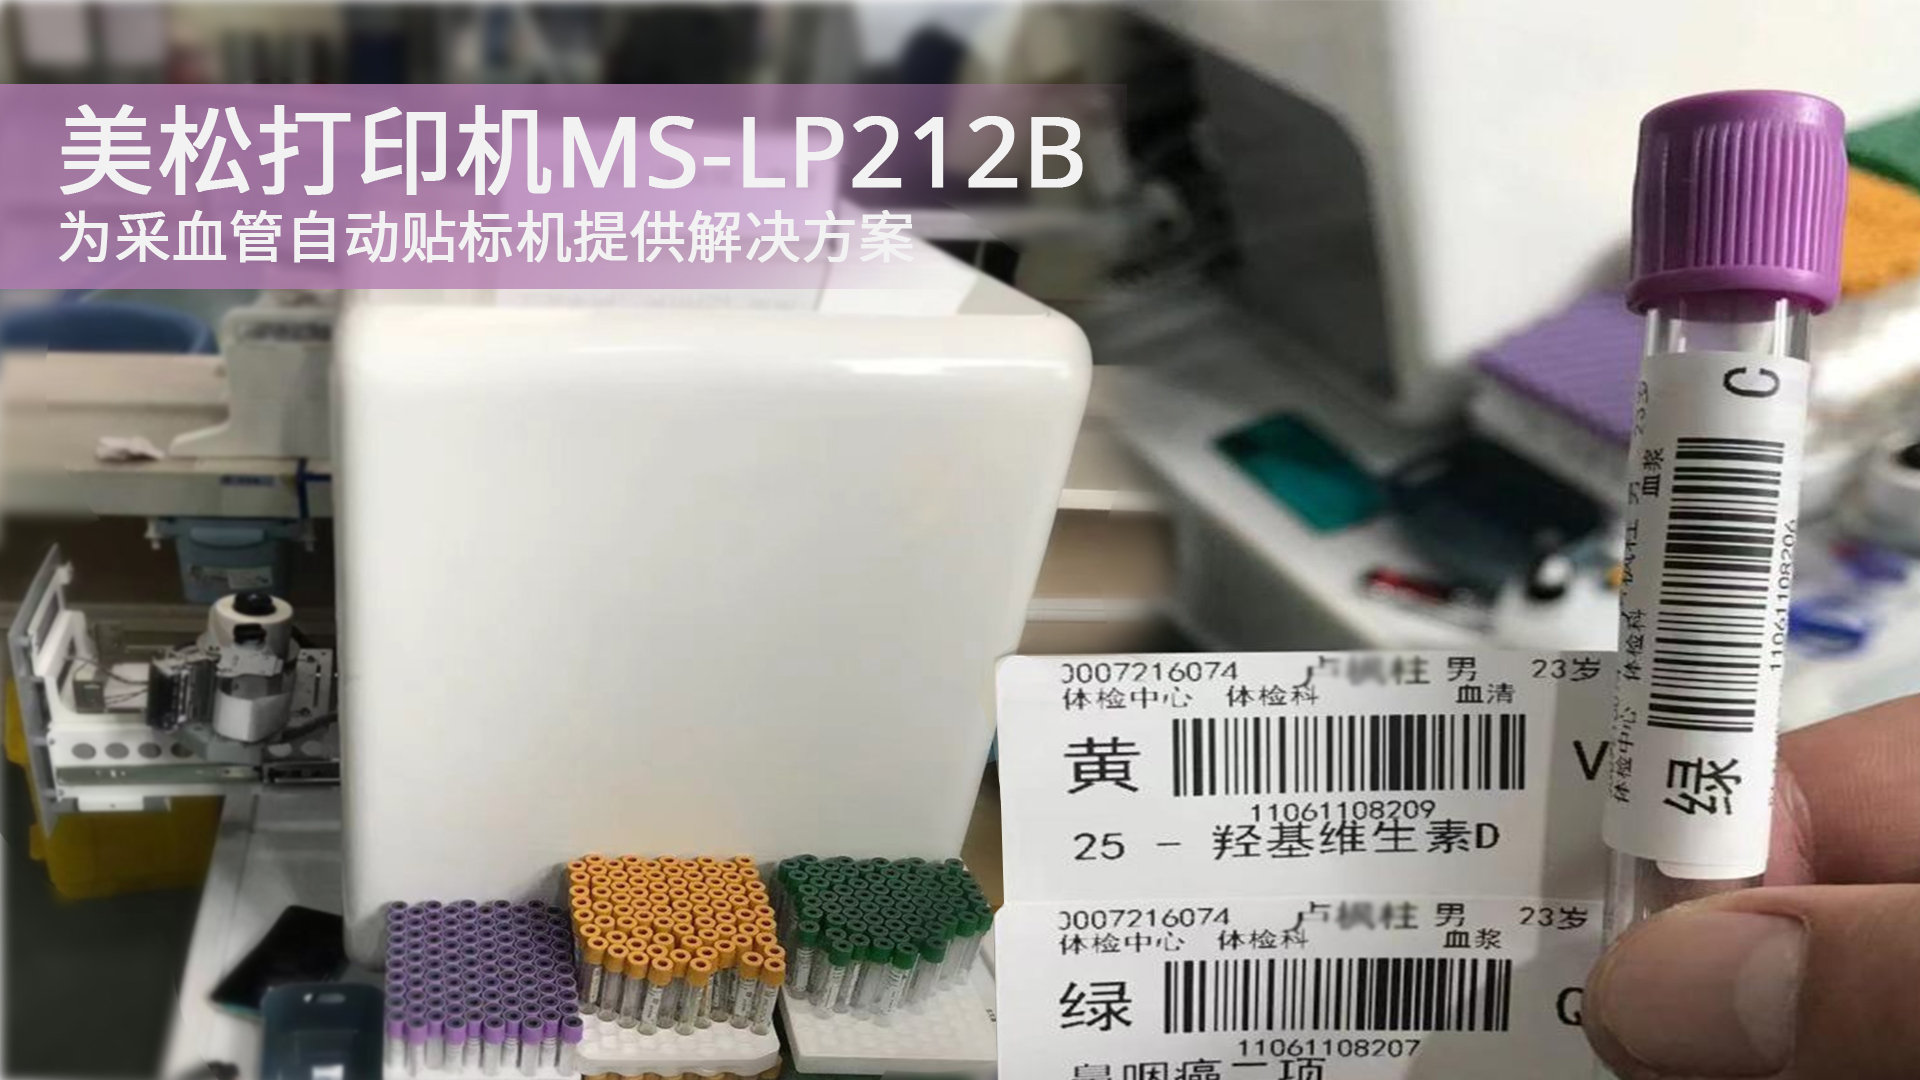 美松打印机MS-LP212B为采血管自动贴标机提供解决方案